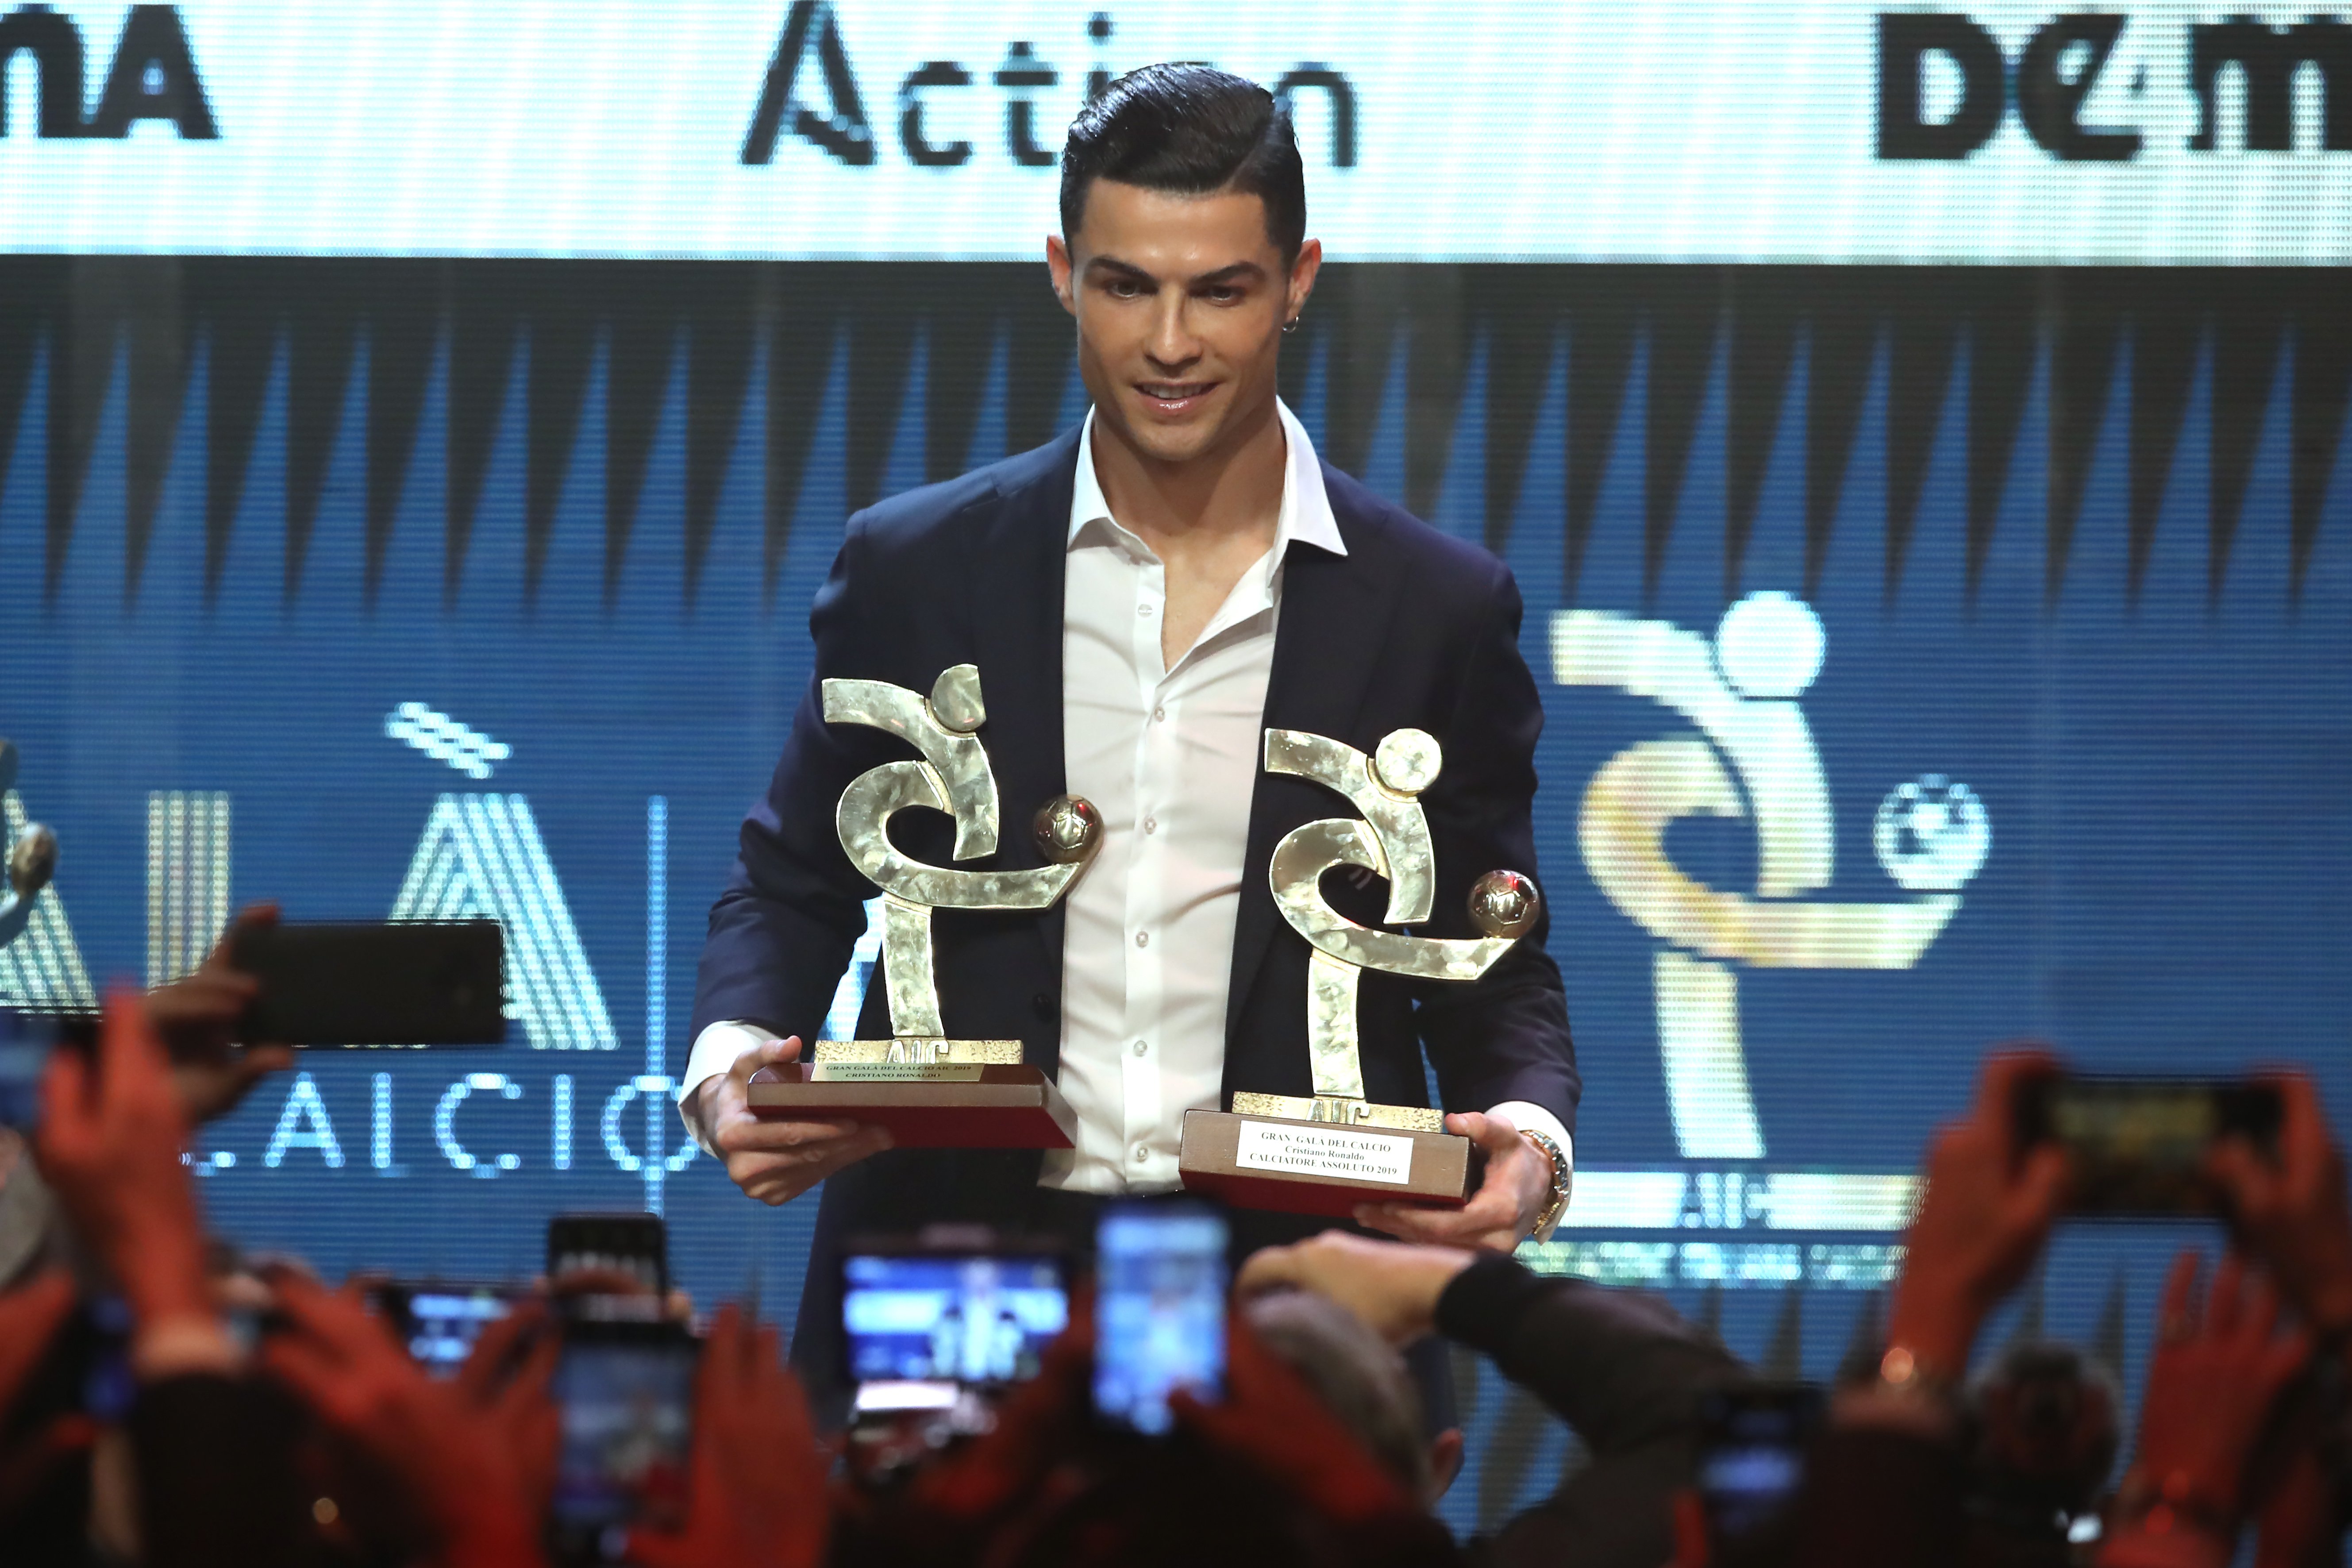 Cristiano sí que es presenta a la gala del 'Calcio' i guanya el premi a millor jugador